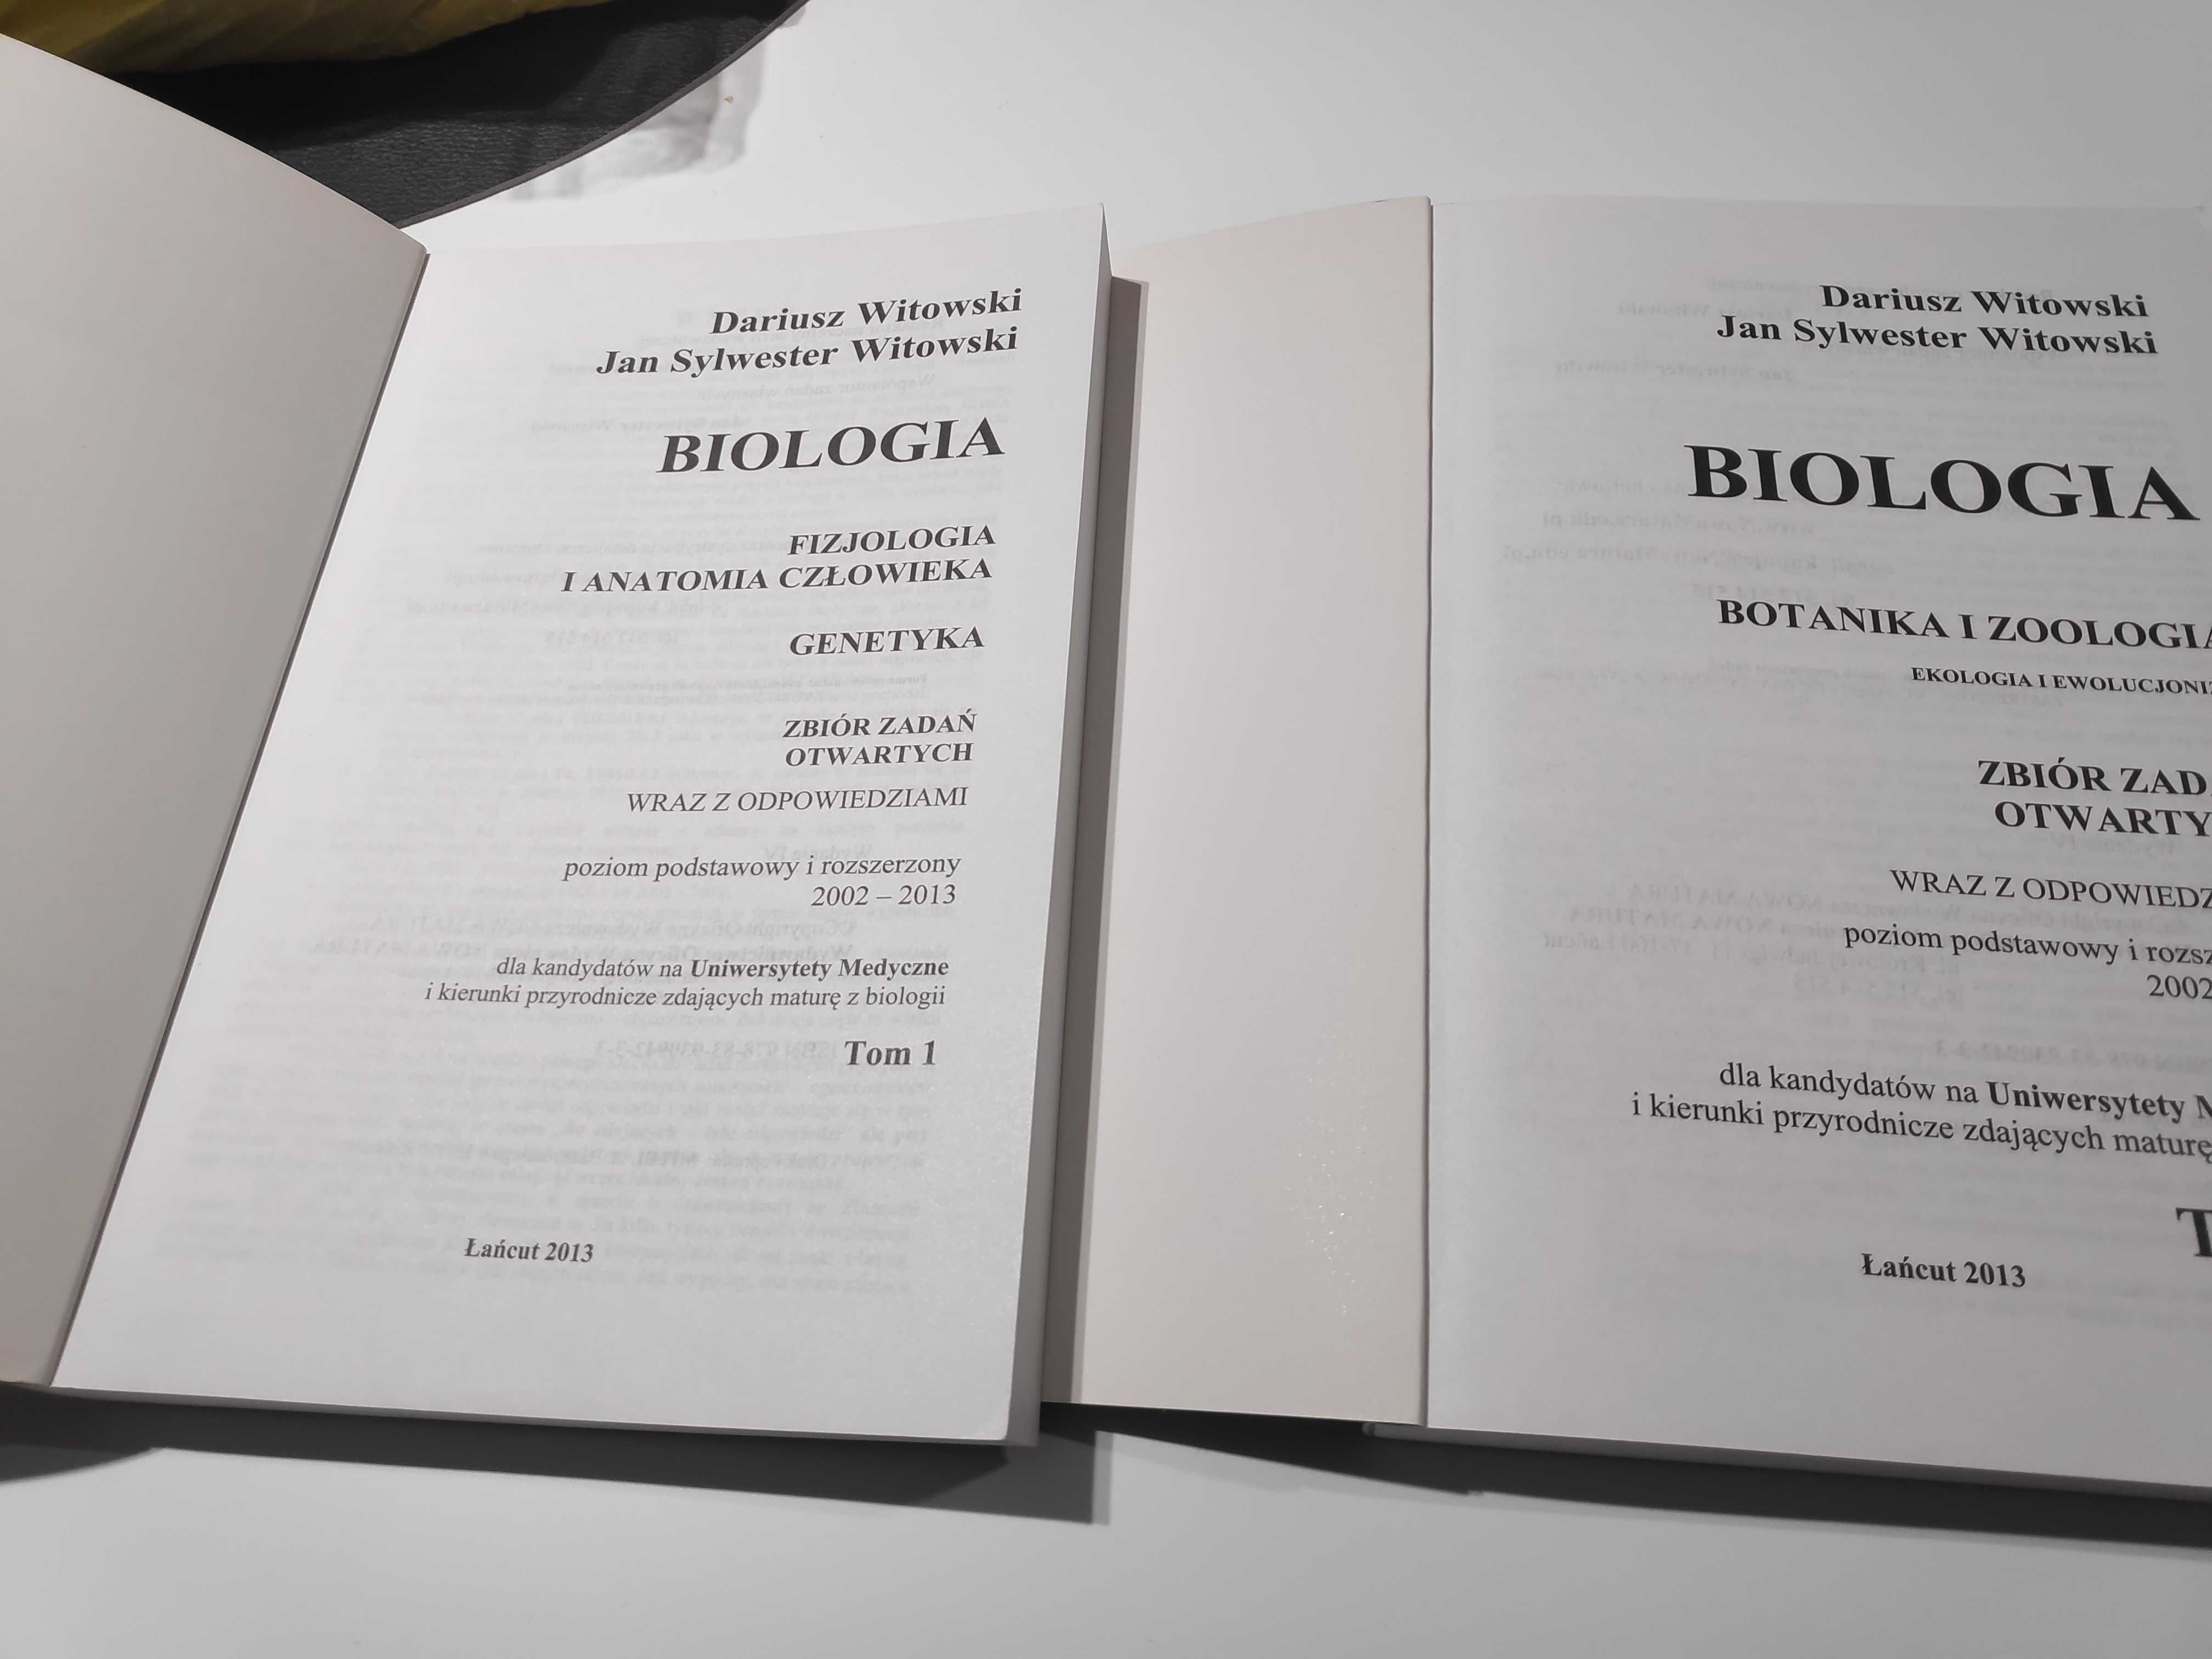 Zbiór zadań otwartych Biologia D. Witowski, J. S. Witowski. Tom 1 i 2.